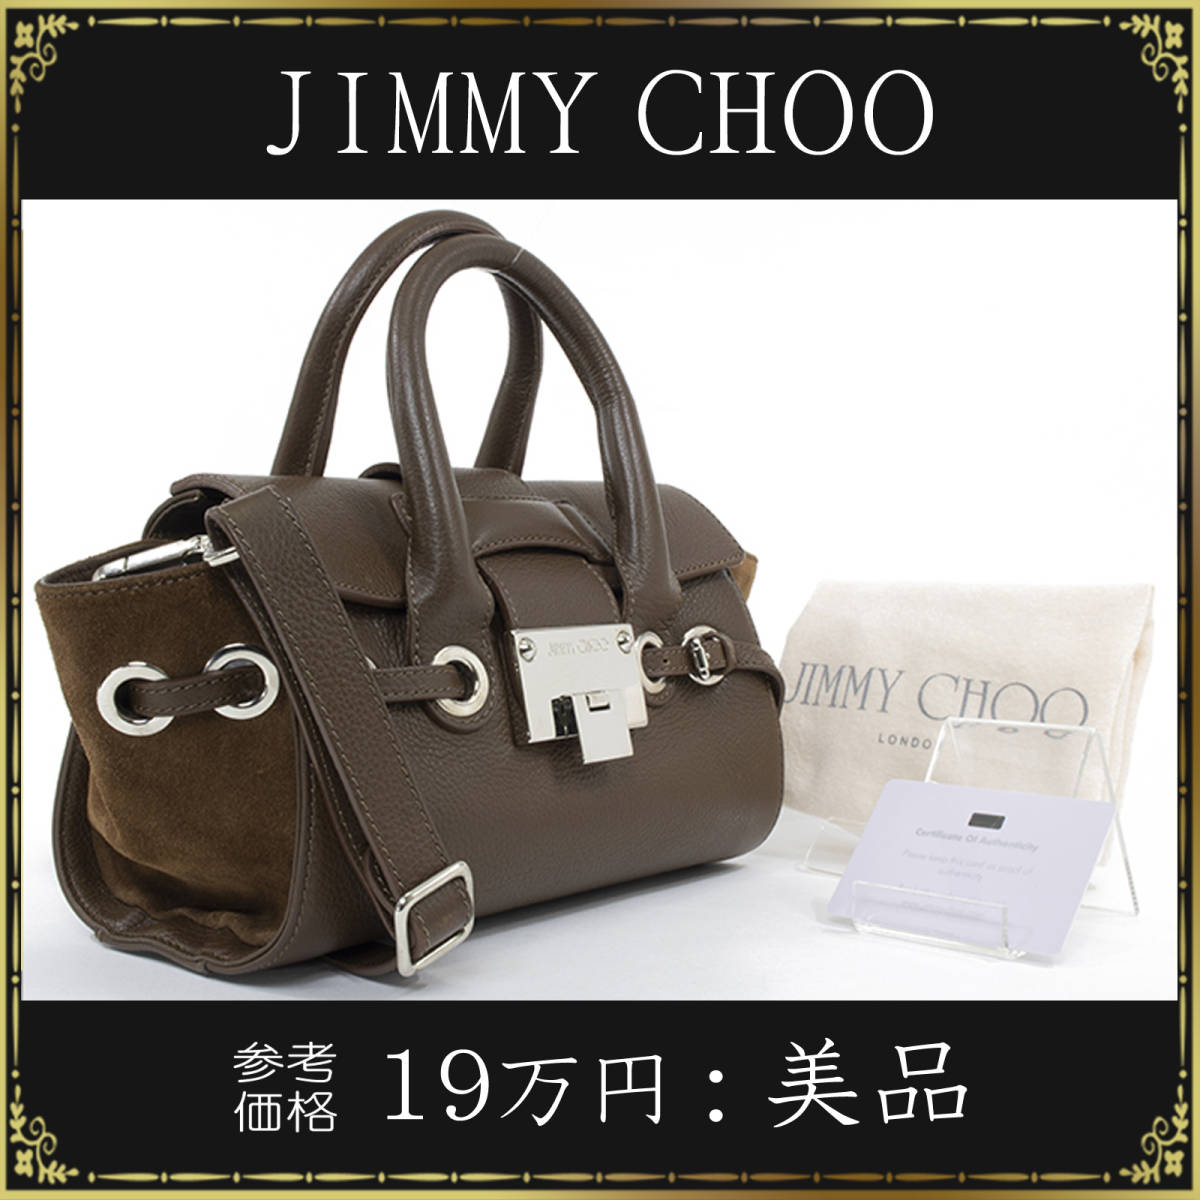 【全額返金保証・送料無料・美品】ジミーチュウの2wayハンドバッグ・ショルダーバッグ・正規品・ライリー・綺麗・ブラウン系・鞄・バック